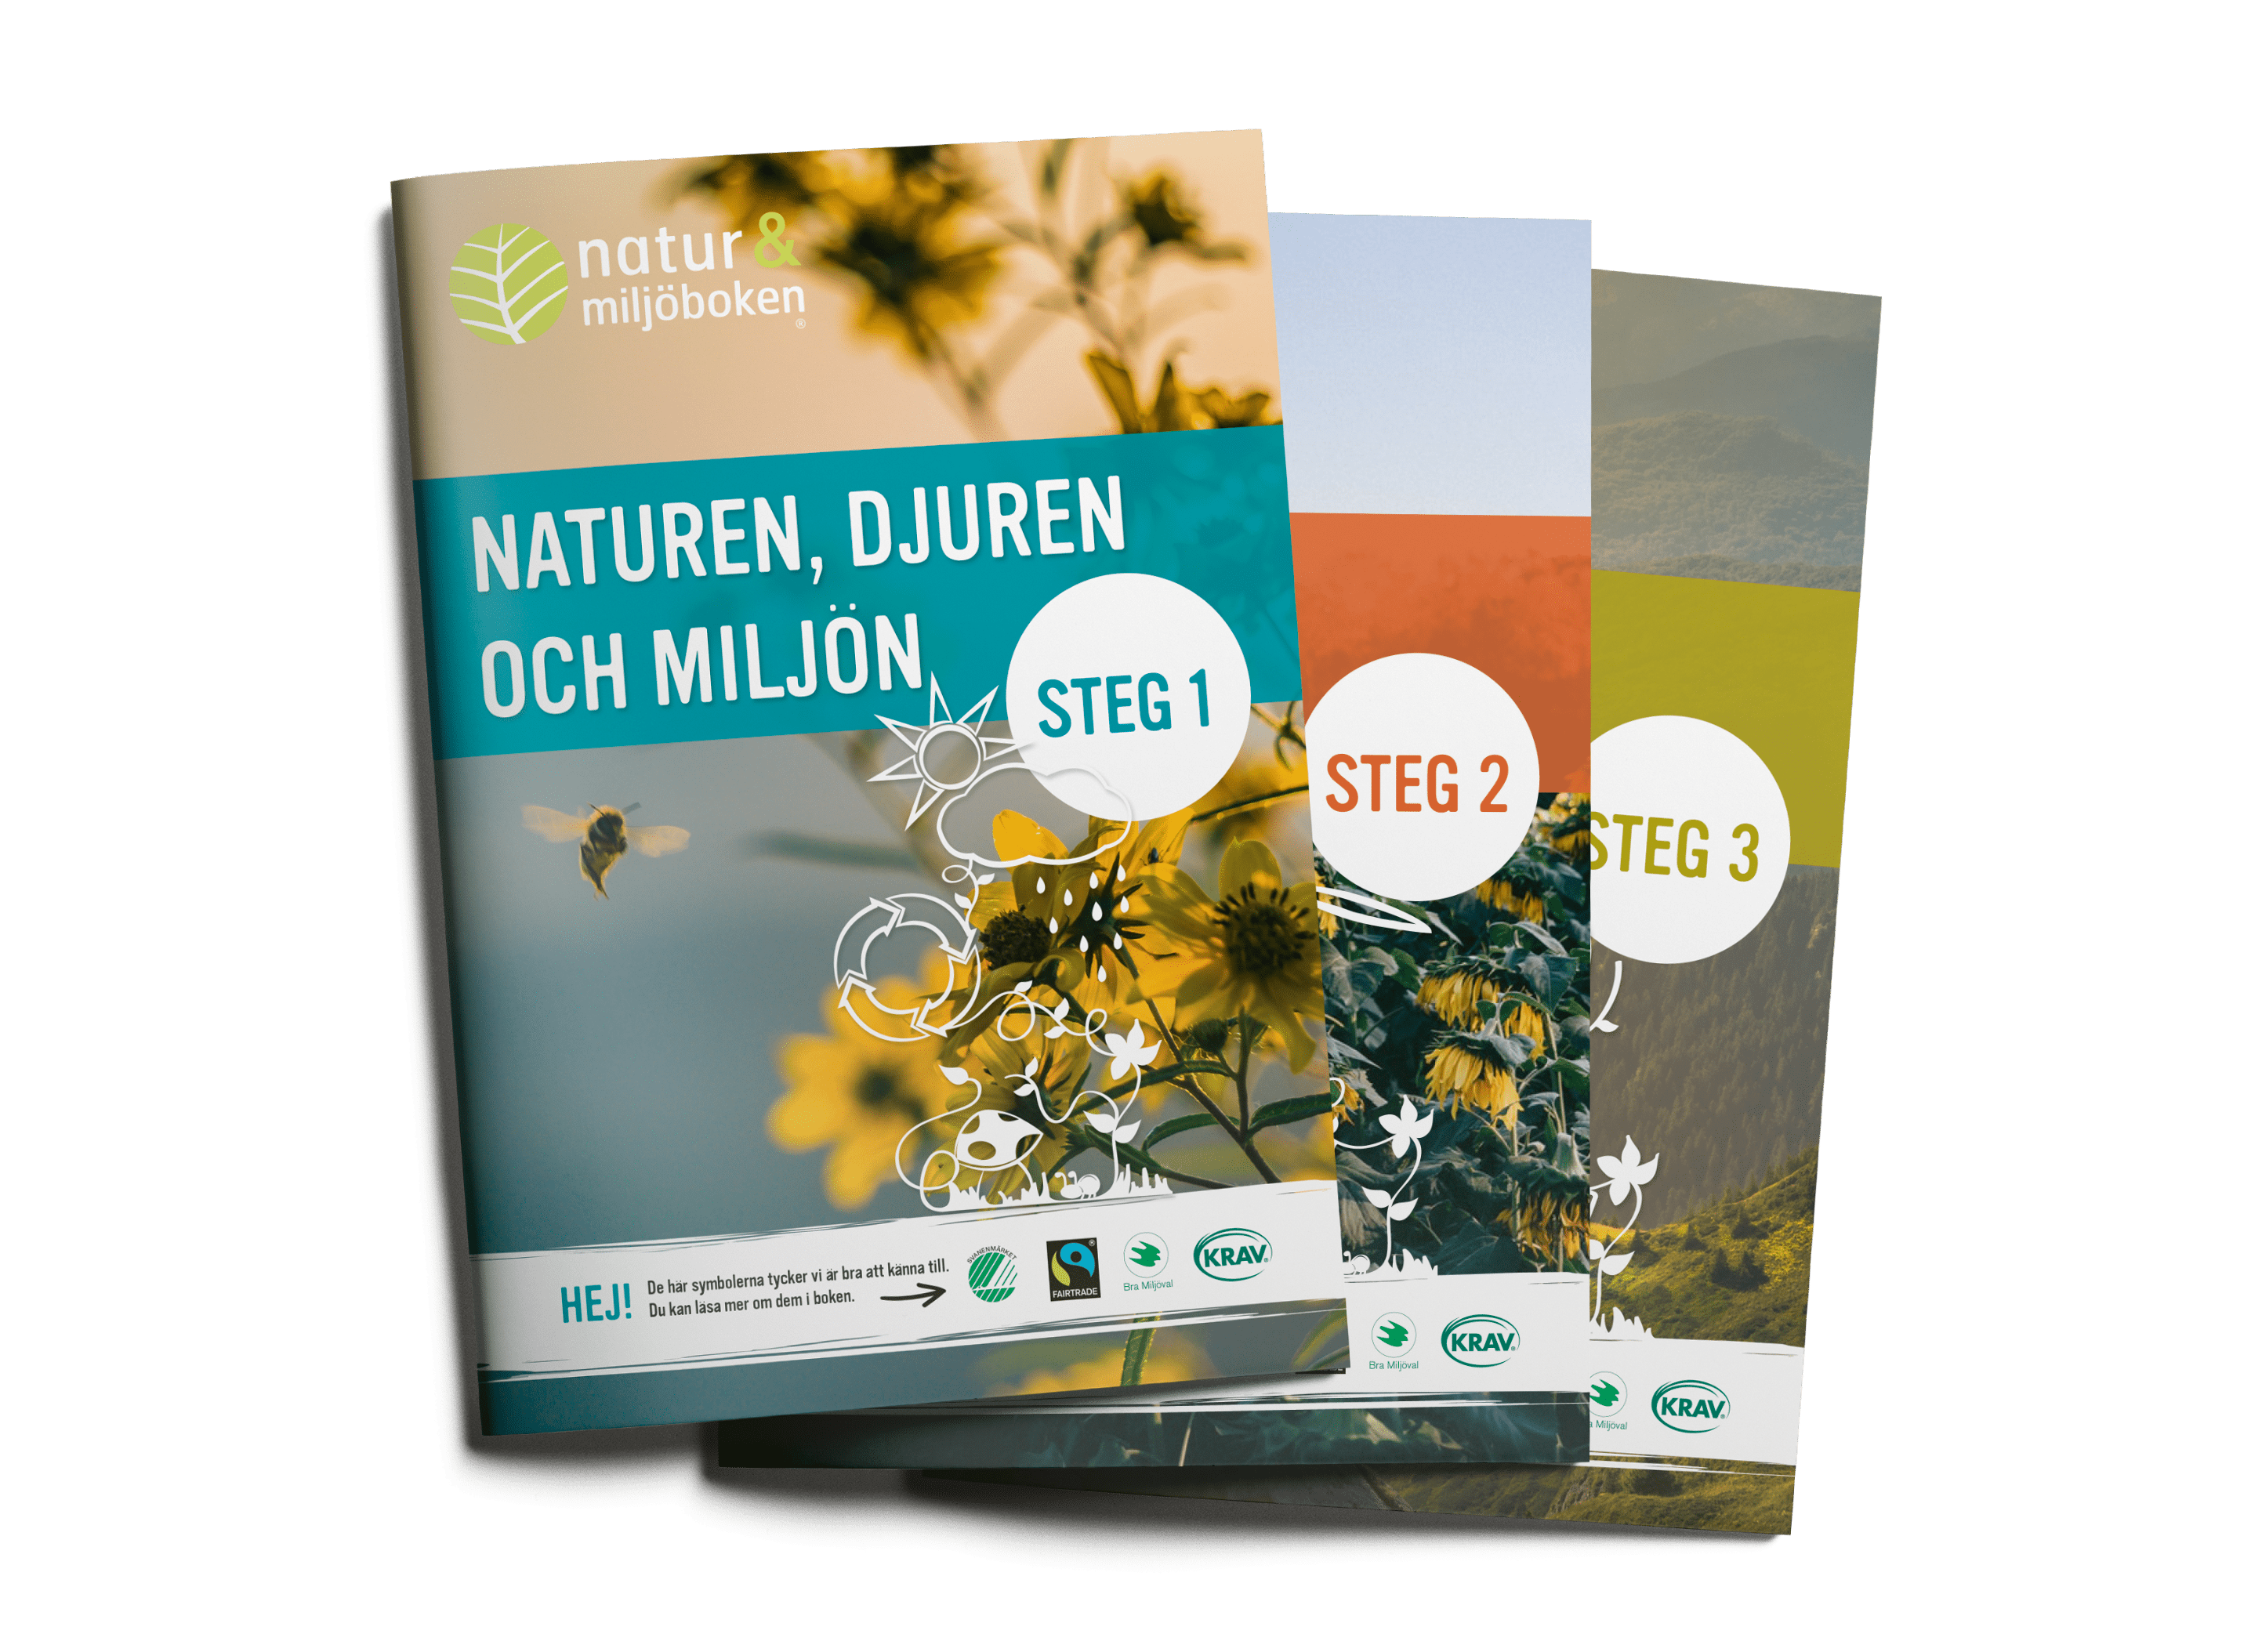 Natur och miljöboken